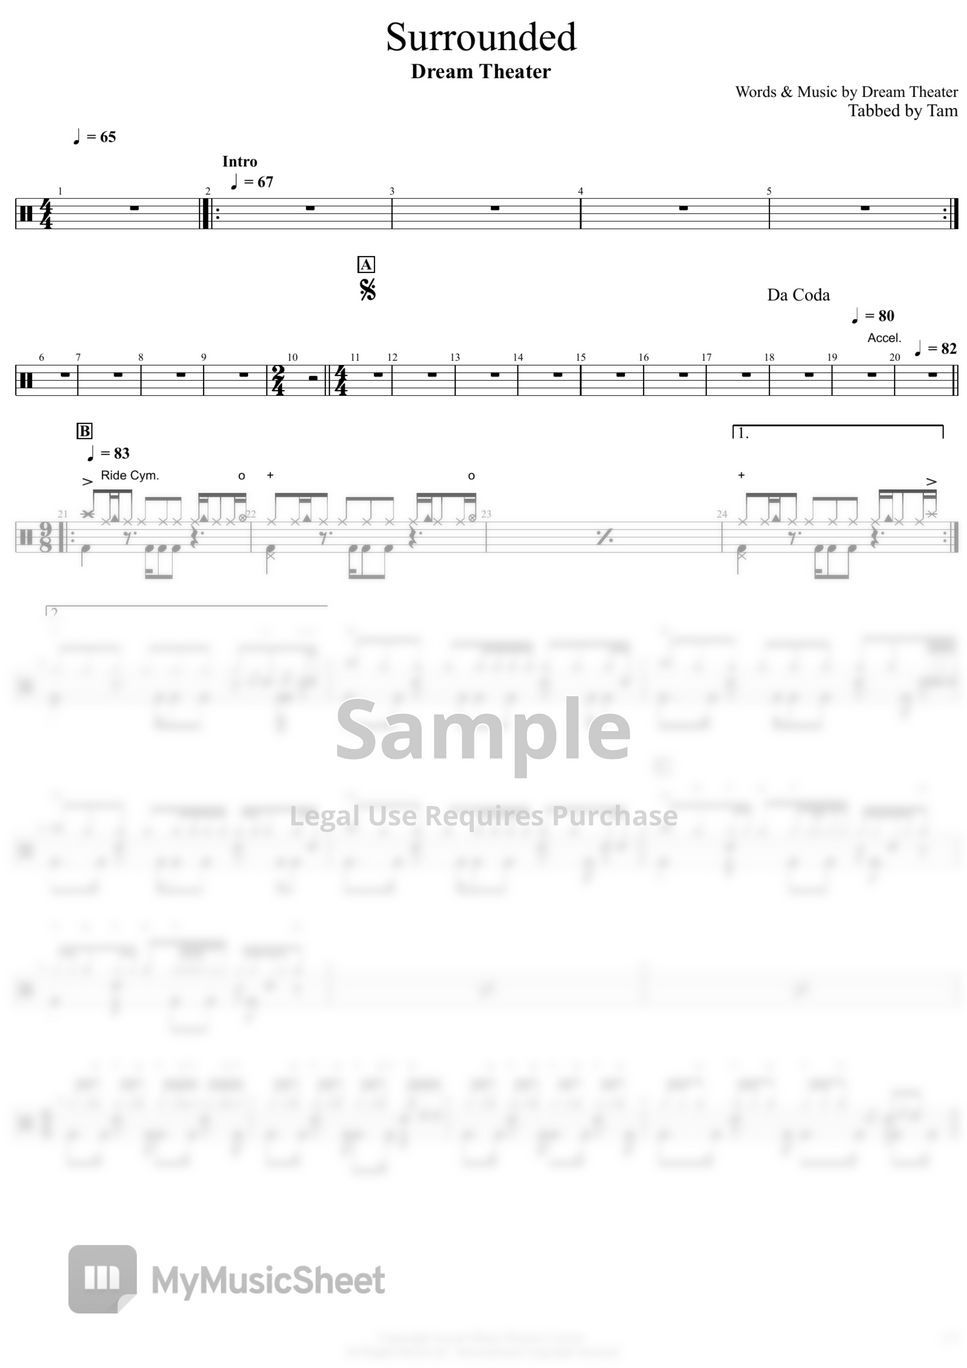 Dream Theater - Surrounded (Dream Theater - Surrounded) by Tam Shau